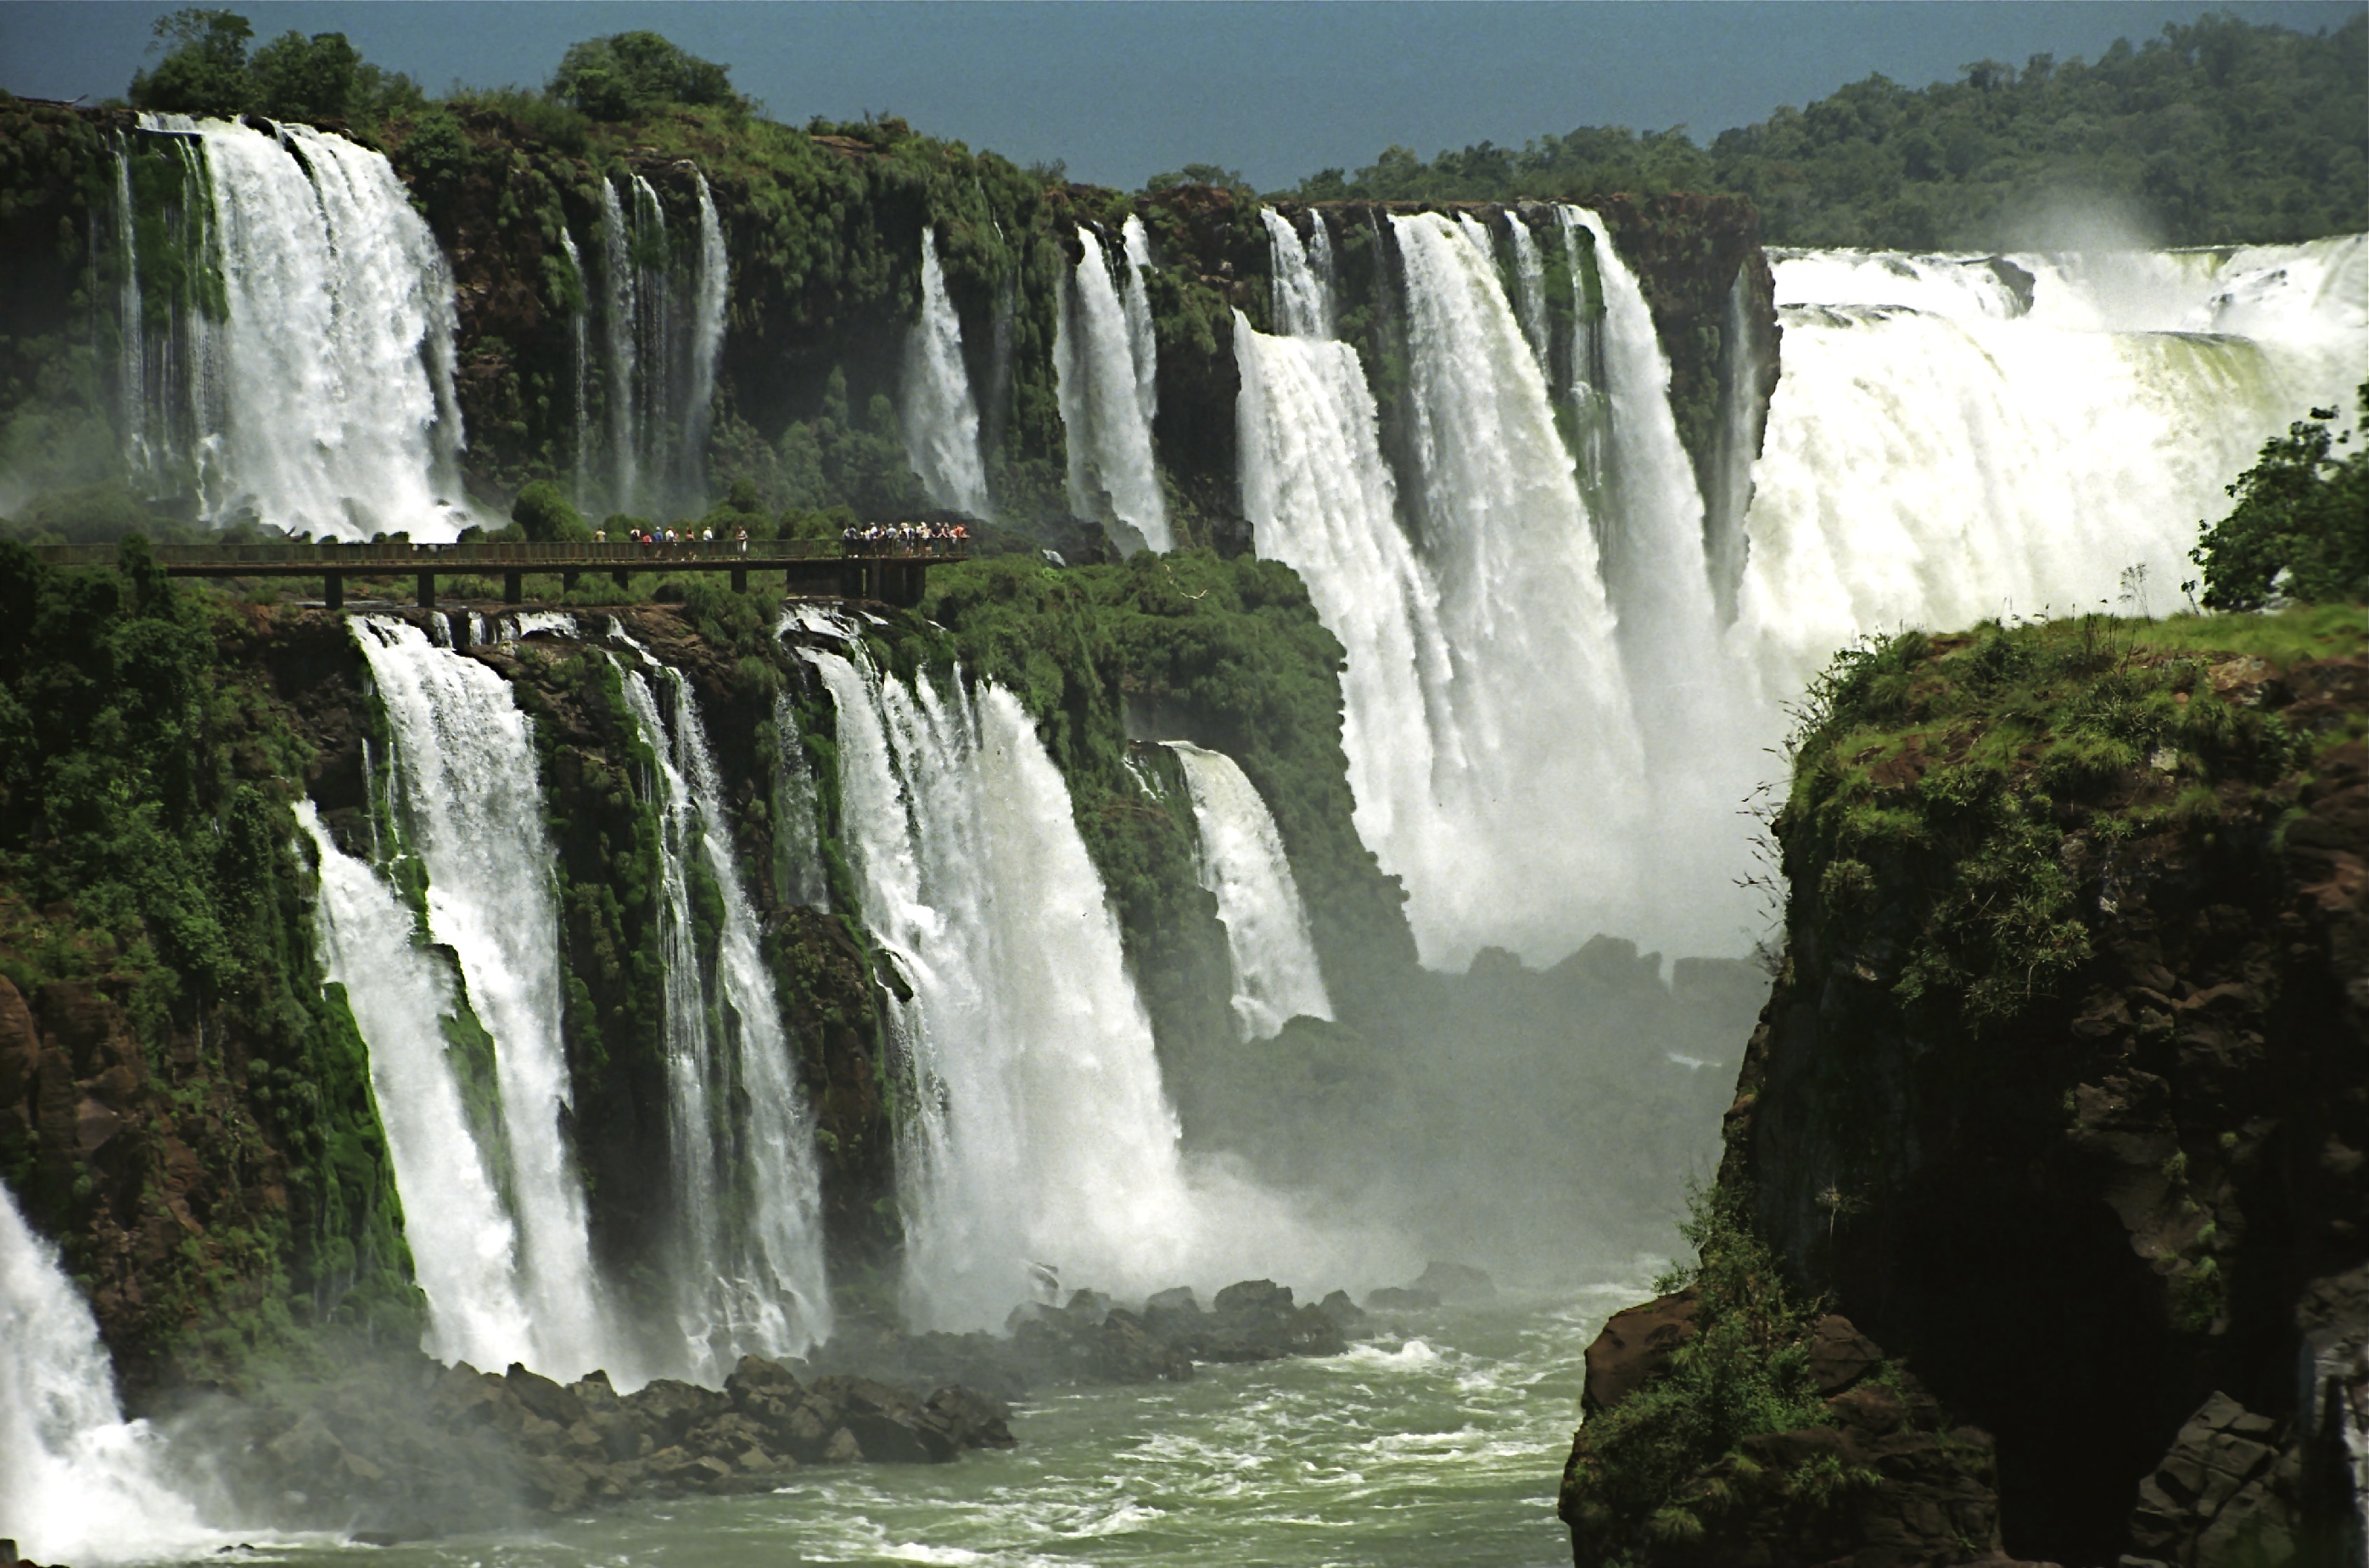 2792x1848px 1351.22 KB Iguazu Falls